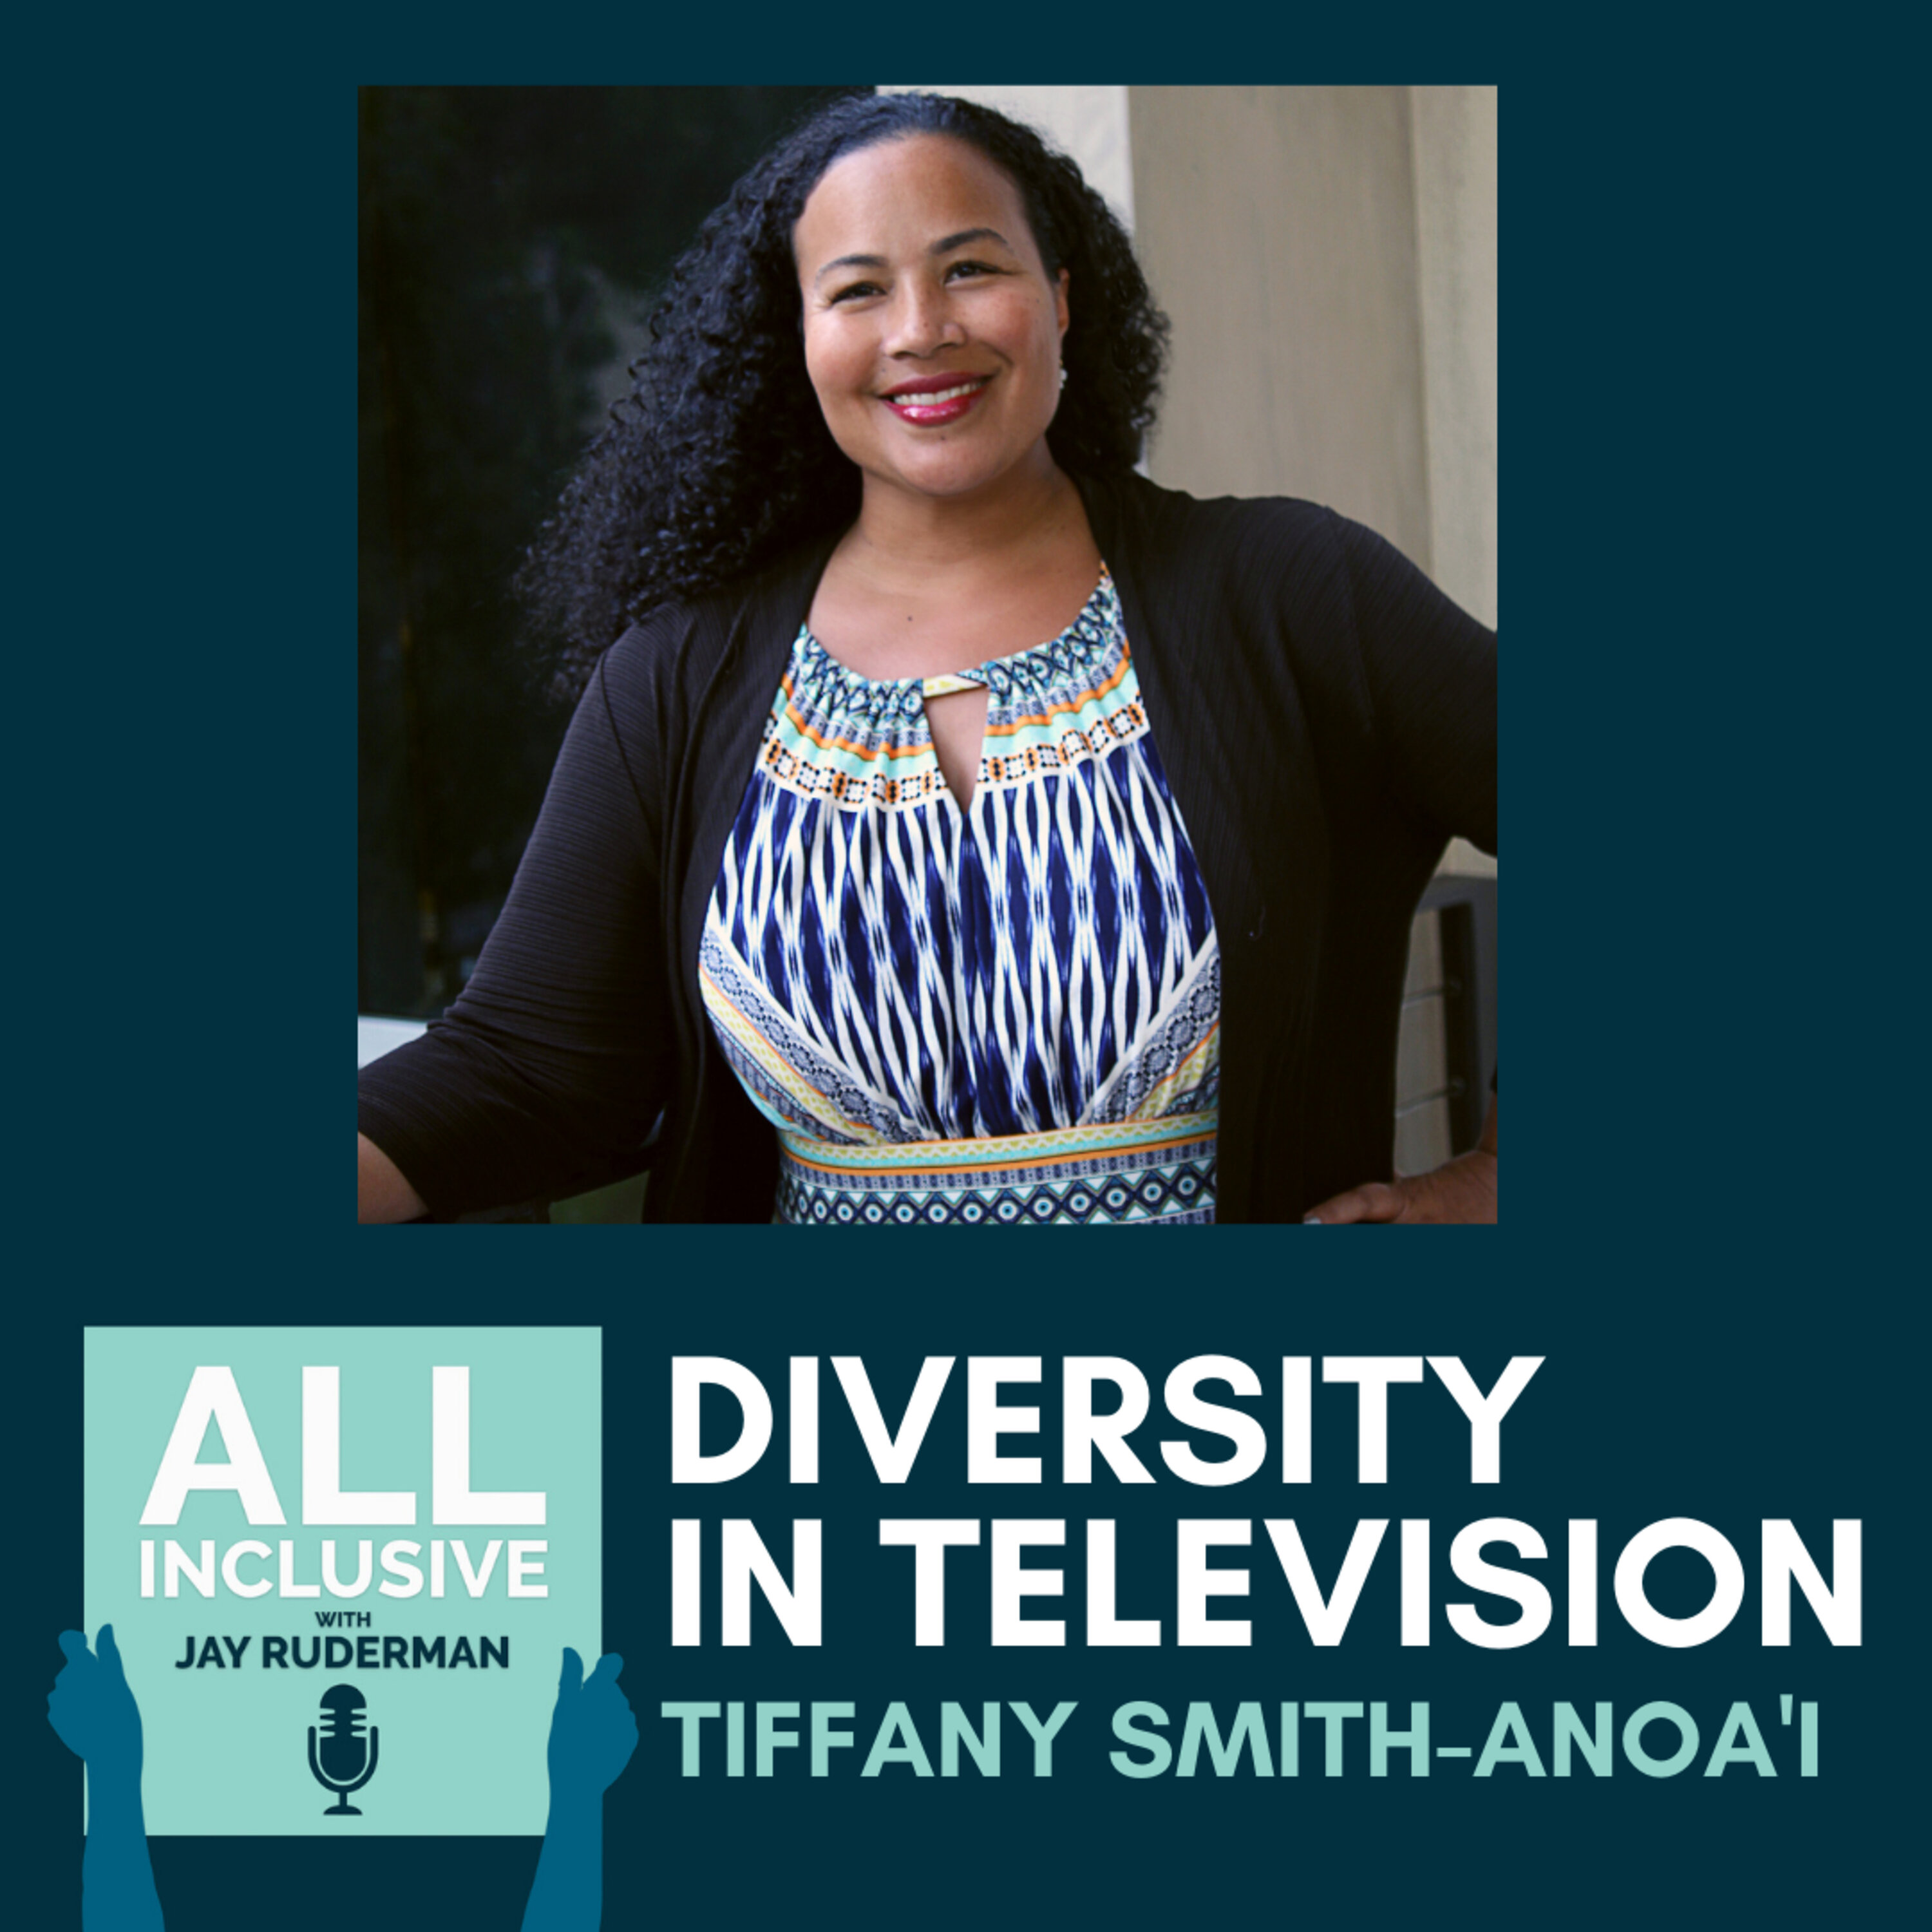 Diversity in Television, with Tiffany Smith-Anoa’i